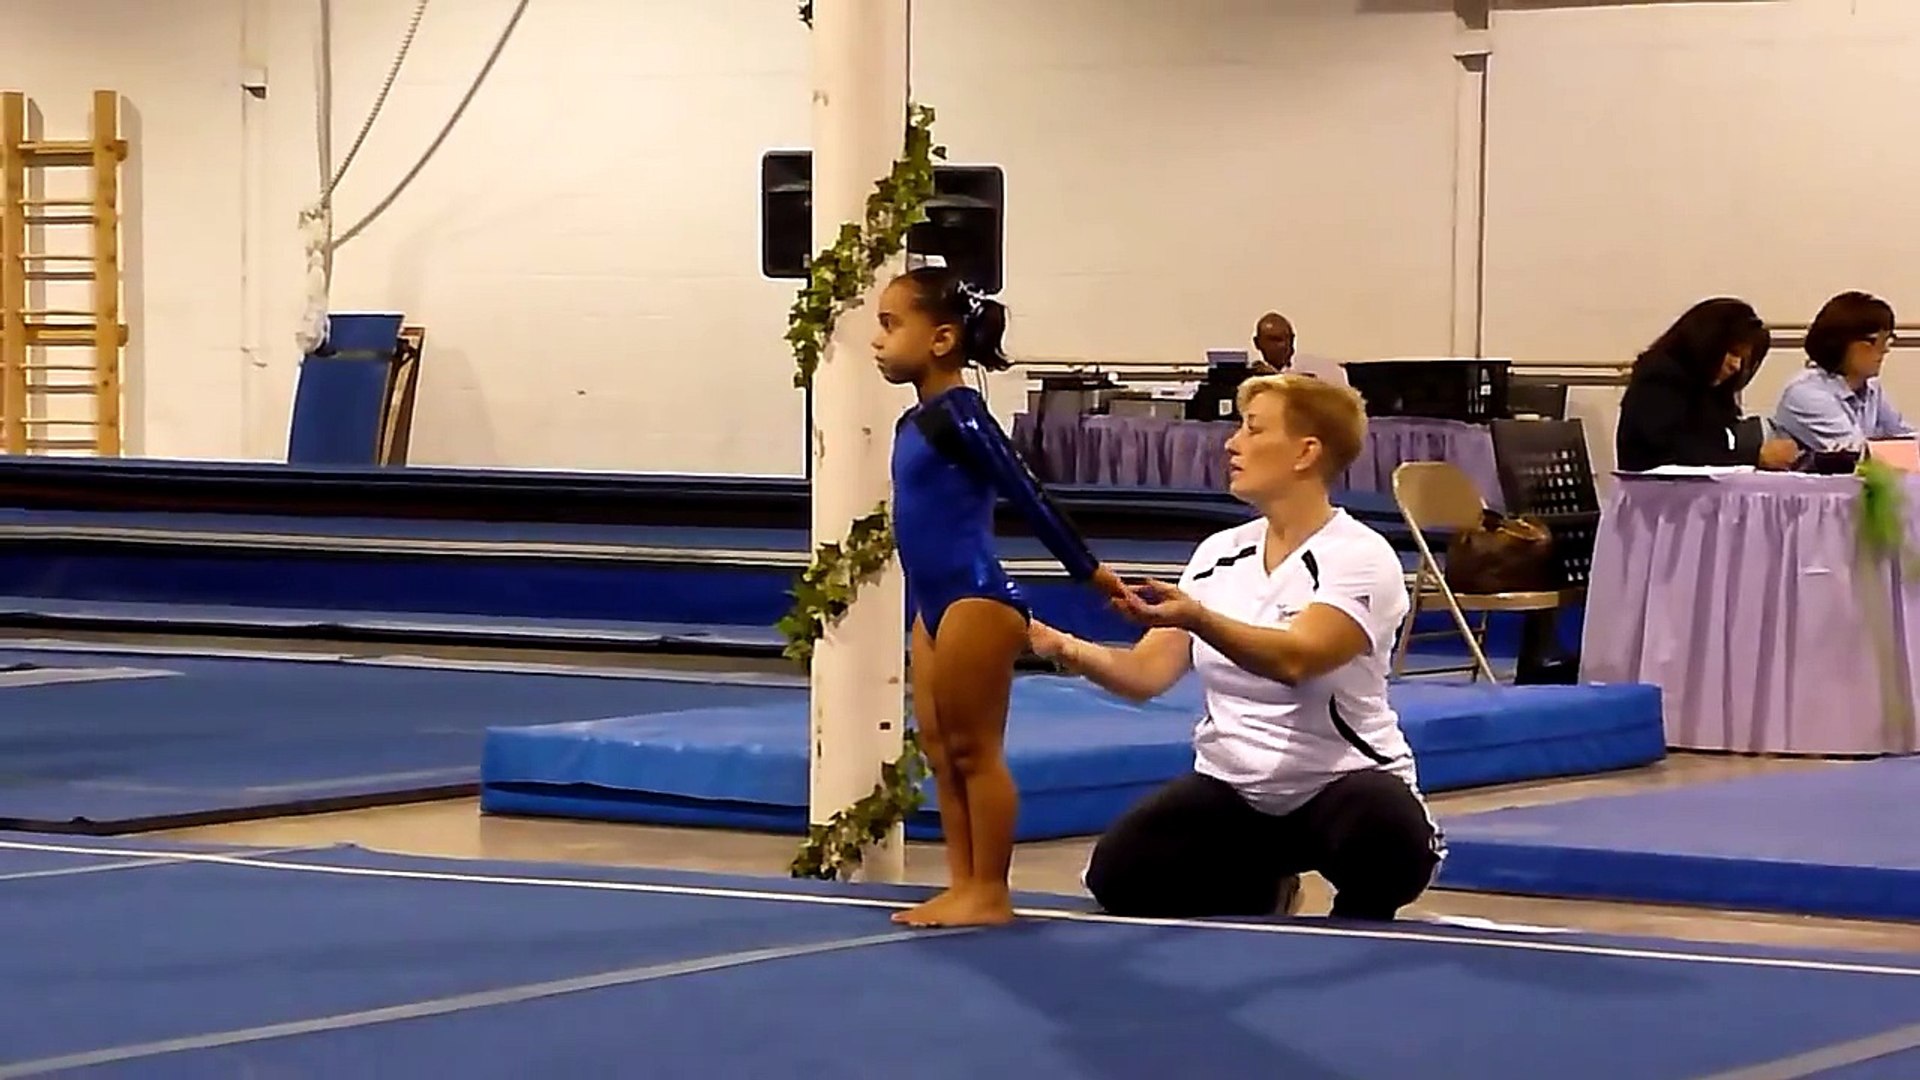 Level 2 Gymnastics Floor Routine Joelle S First Meet Video